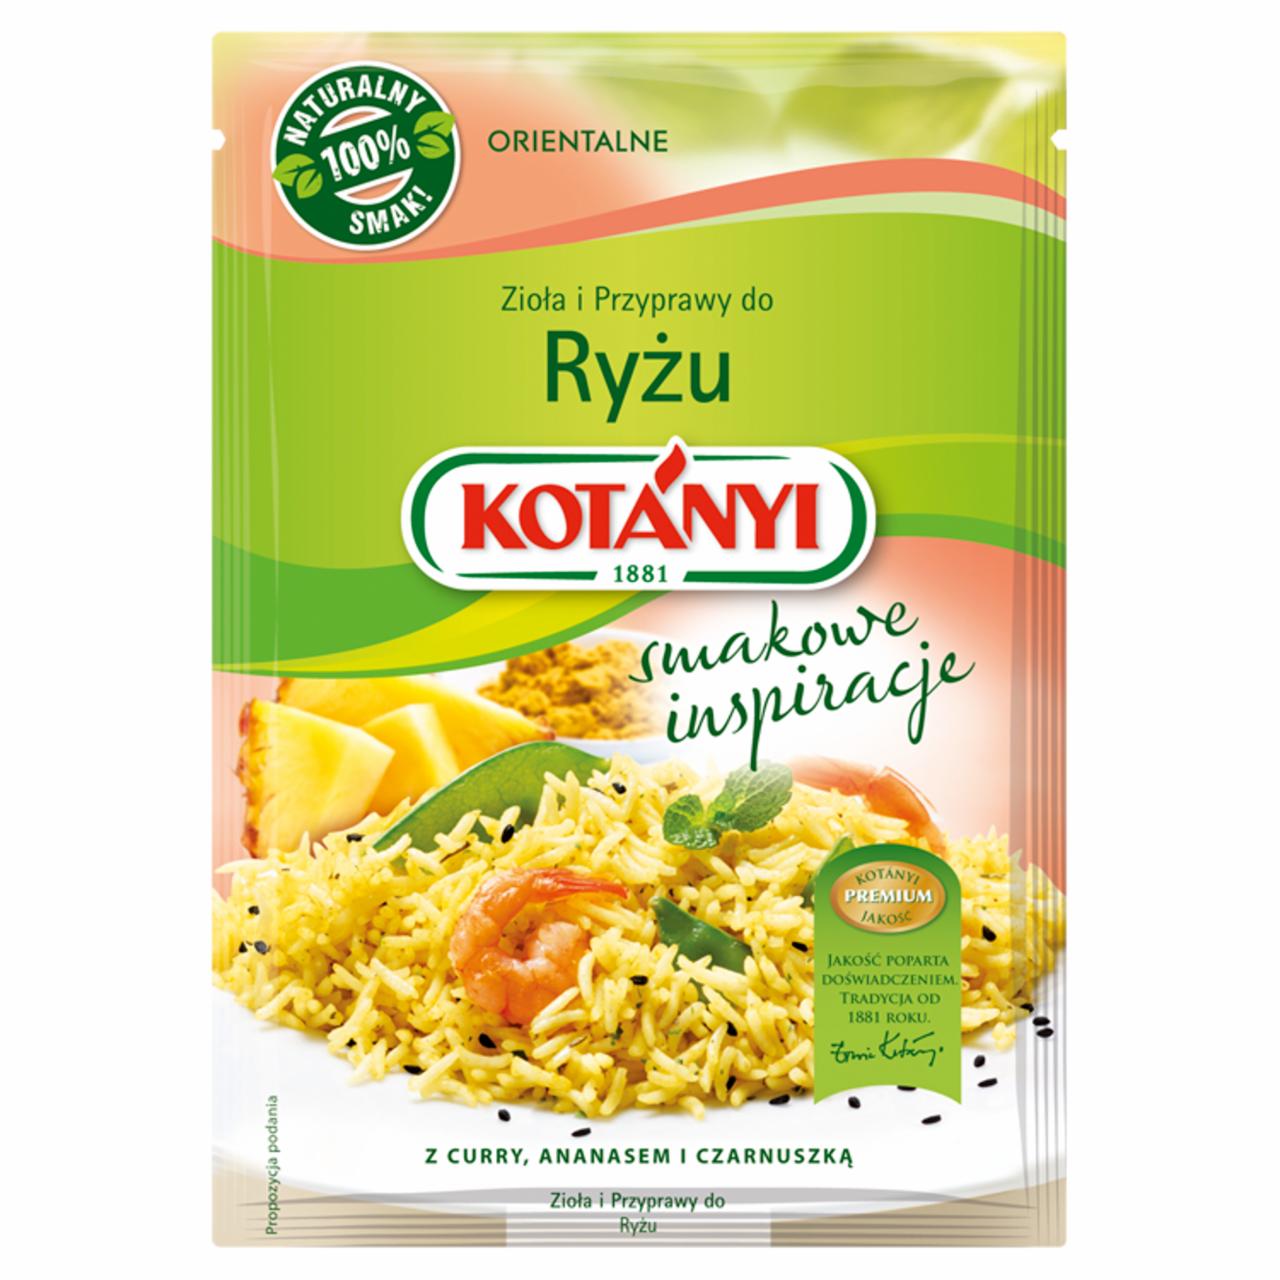 Zdjęcia - Kotányi Smakowe inspiracje Zioła i przyprawy do ryżu 25 g